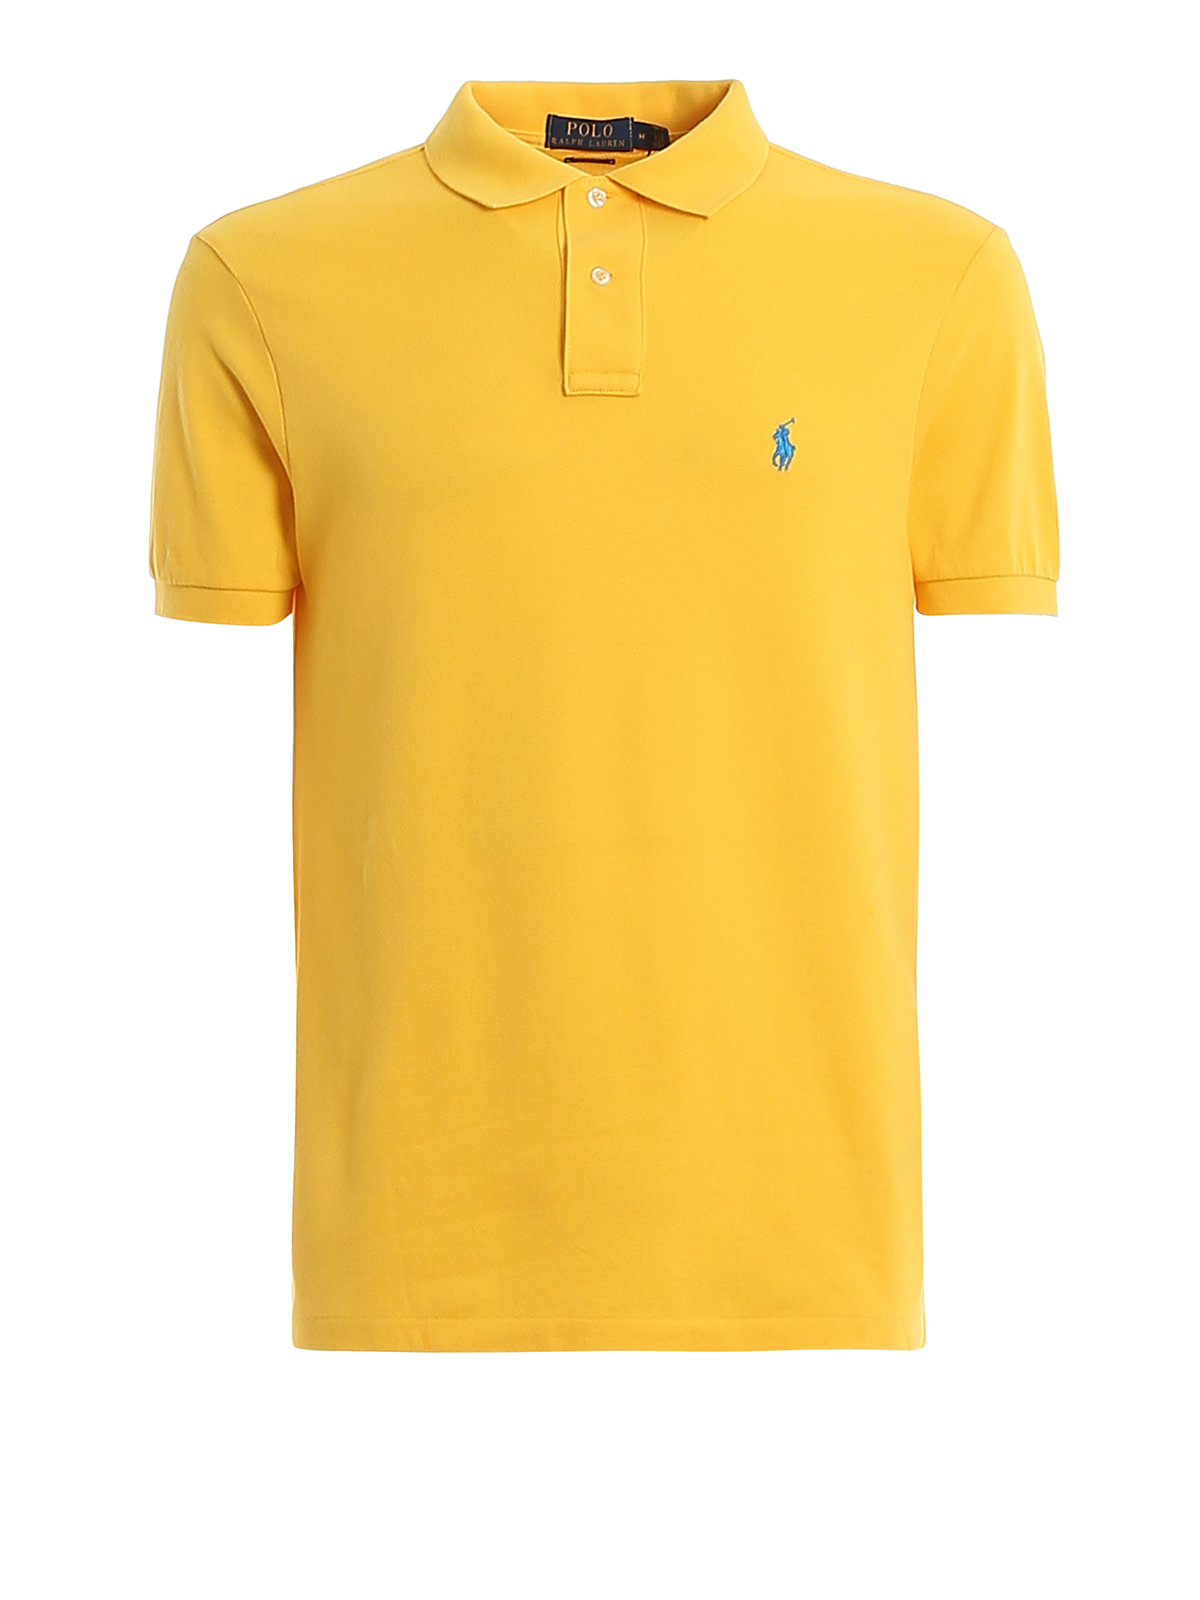 Polo shirts Polo Ralph Lauren - Logo embroidery yellow pique polo shirt -  710795080022